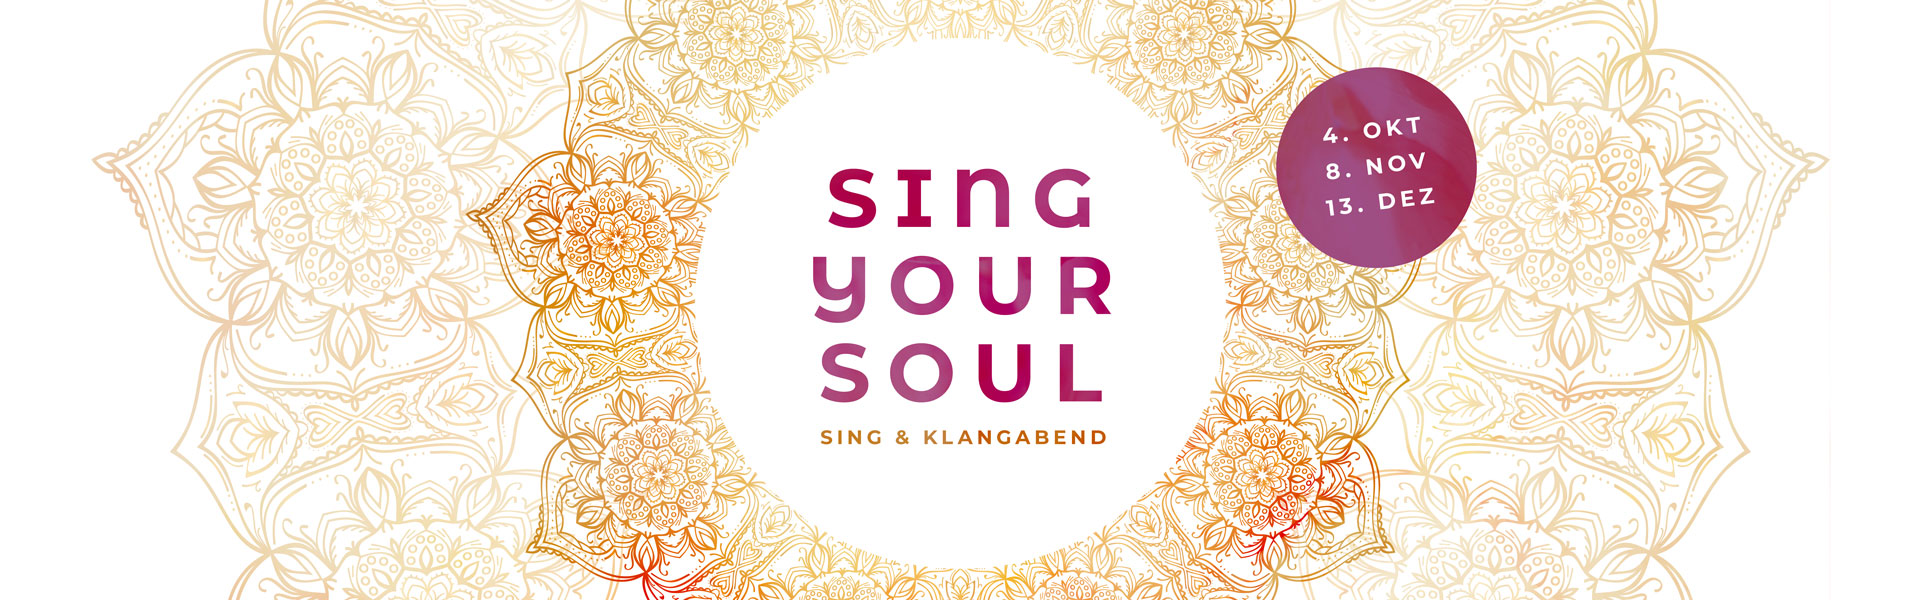 Sing Your Soul | Stimm- und Klangreise mit Yeshi Choedon in Freiburg